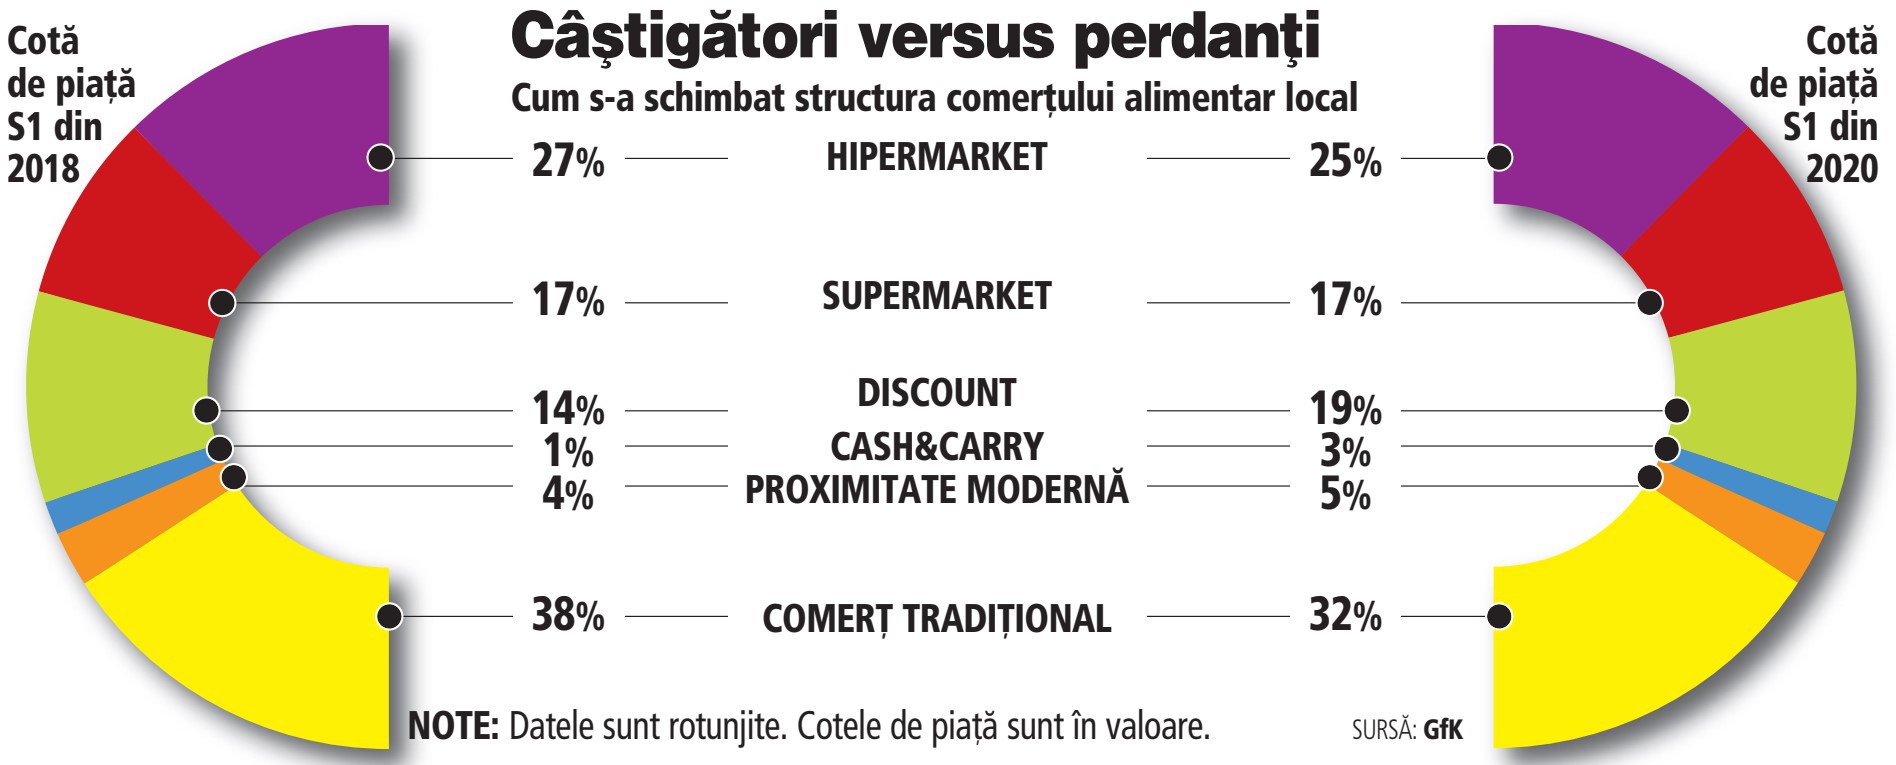 Comerţul alimentar la raport: magazinele de discount au câştigat 5% cotă de piaţă în doi ani, mâncând de la hipermarketuri şi magazine tradiţionale